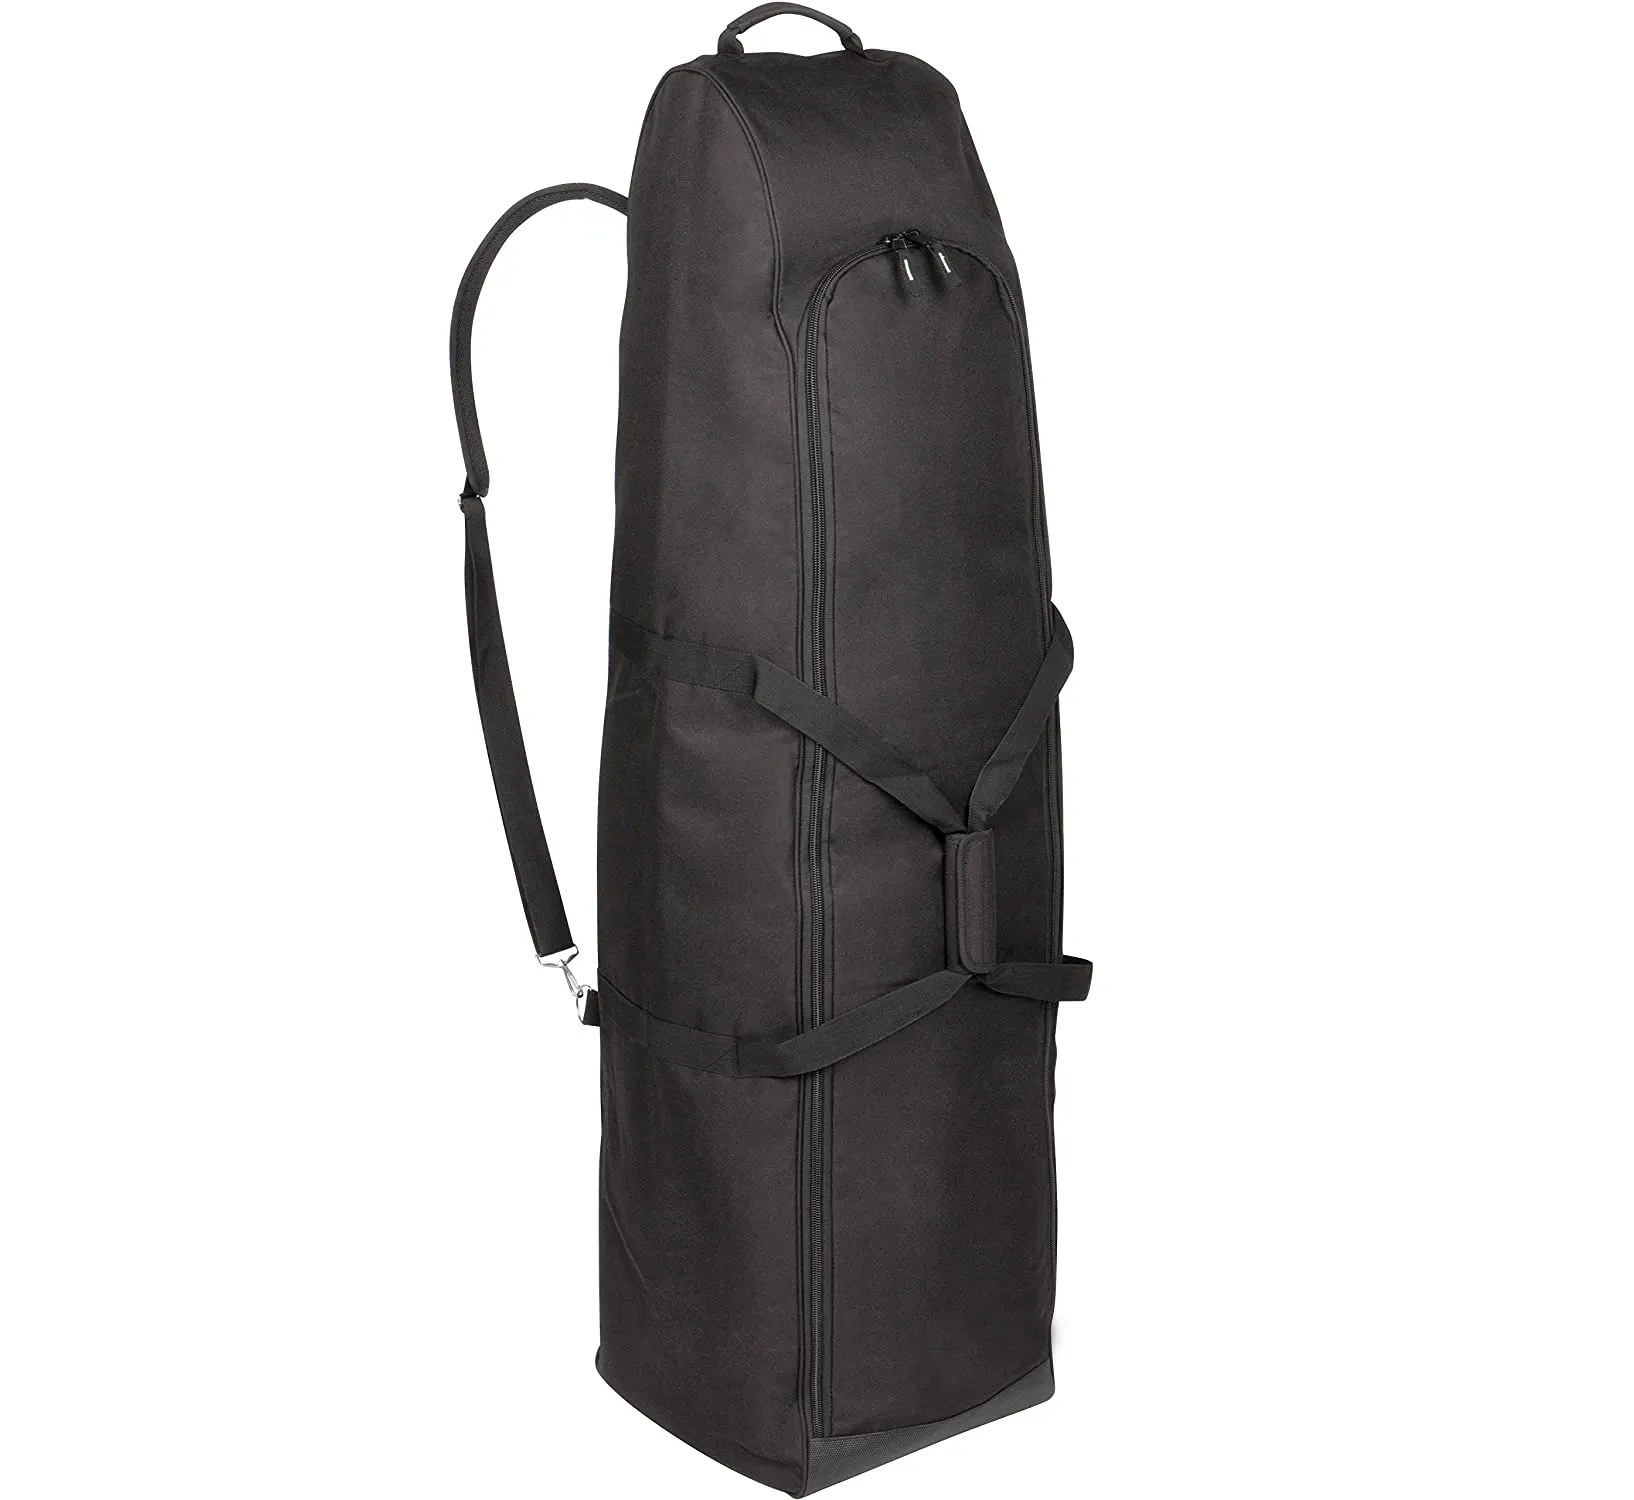 कस्टम एयरलाइंस के लिए गद्देदार गोल्फ आधार सामान बैग यात्रा गोल्फ बैग गोल्फ क्लब की रक्षा करता है